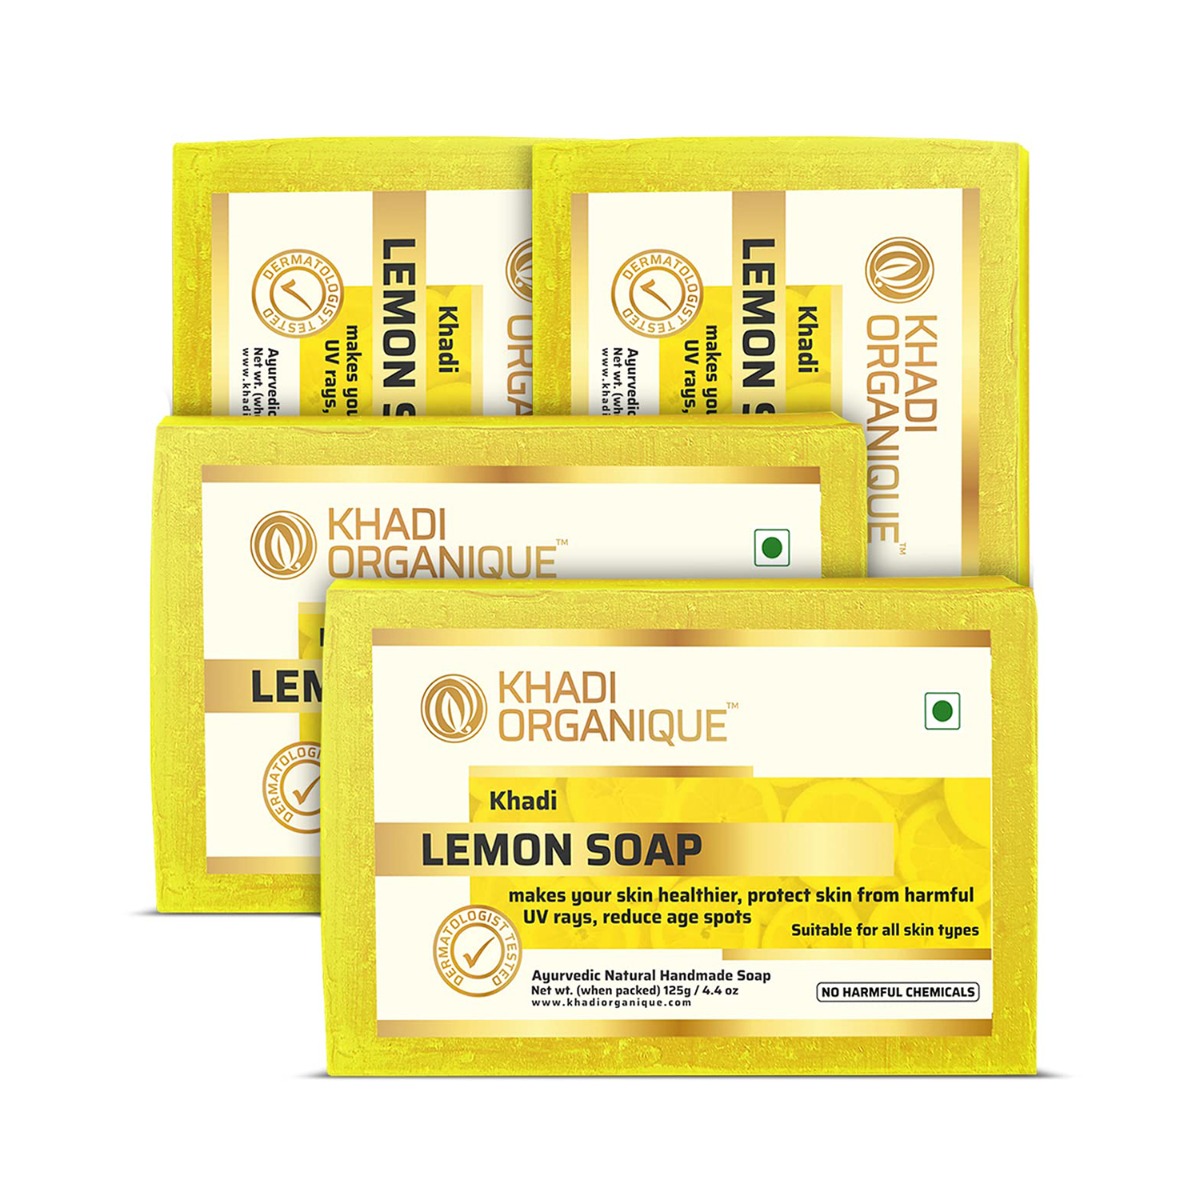 Khadi Organique Lemon Soap - Pack Of 4, 500gm